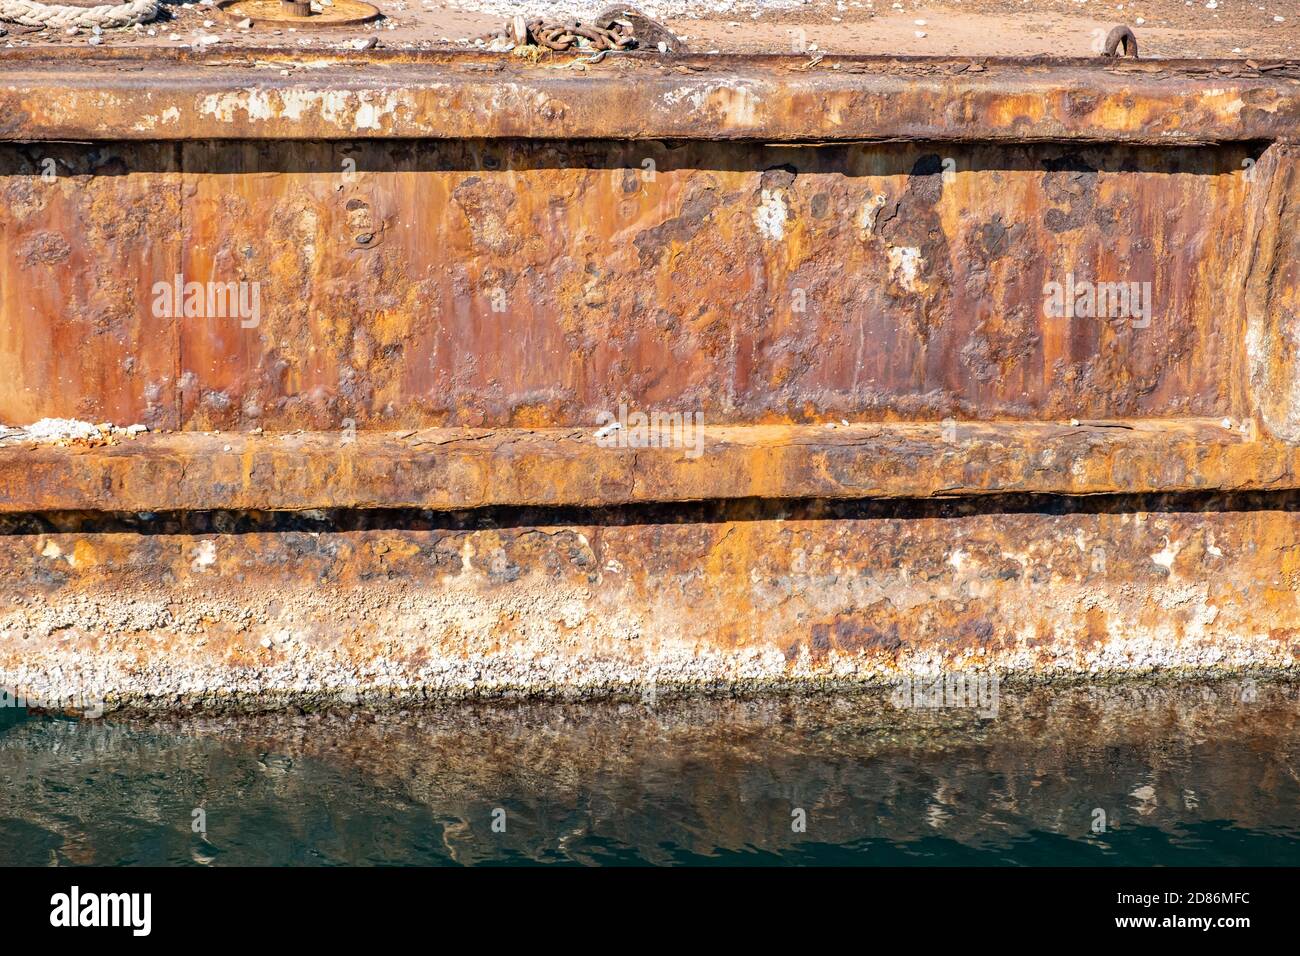 Vieux quai industriel en métal rouillé près du port, réflexions sur l'eau de mer. Banque D'Images